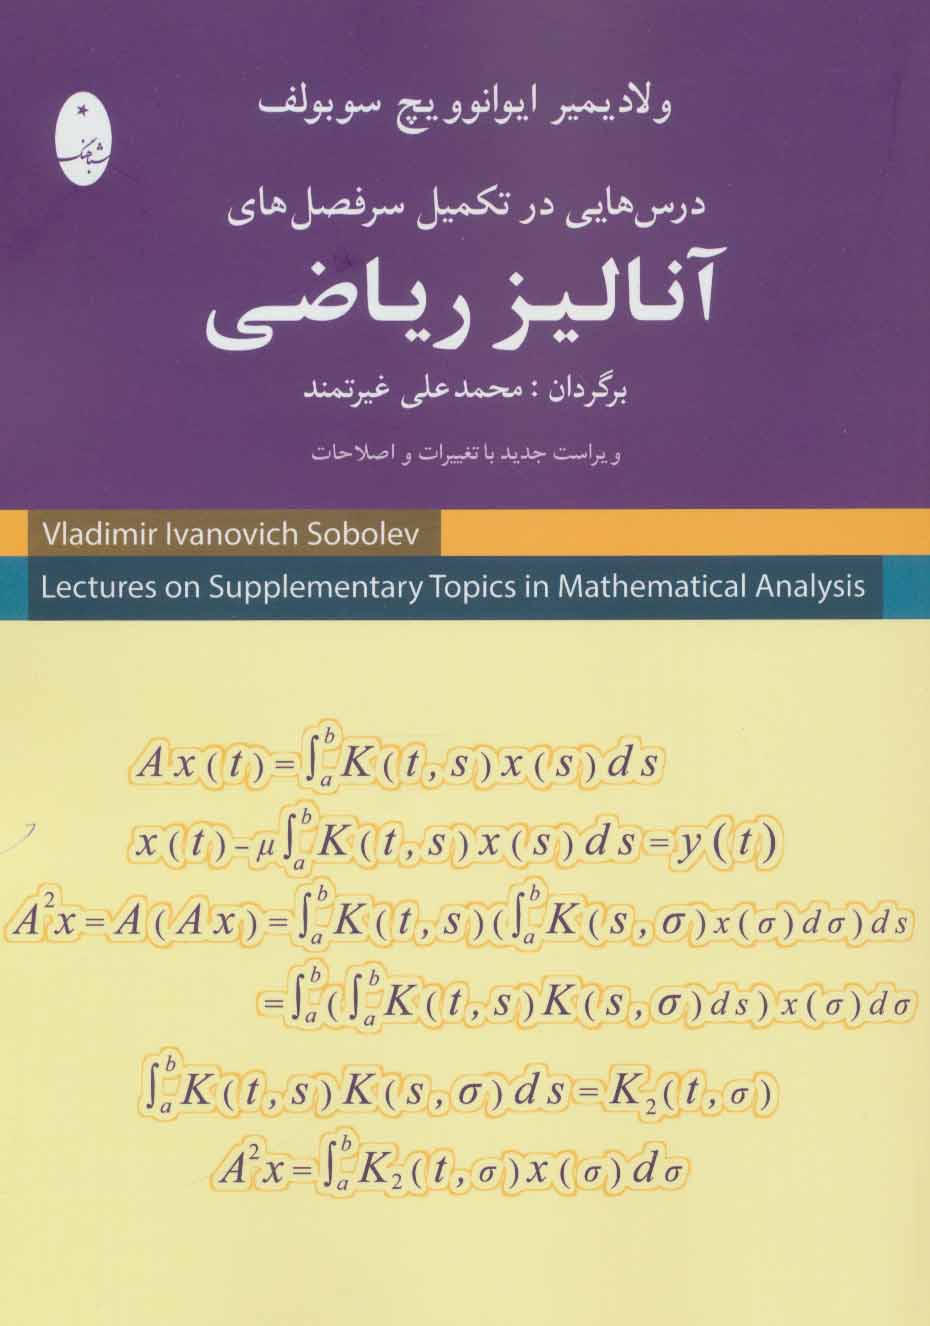  کتاب درس هایی در تکمیل سرفصل های آنالیز ریاضی